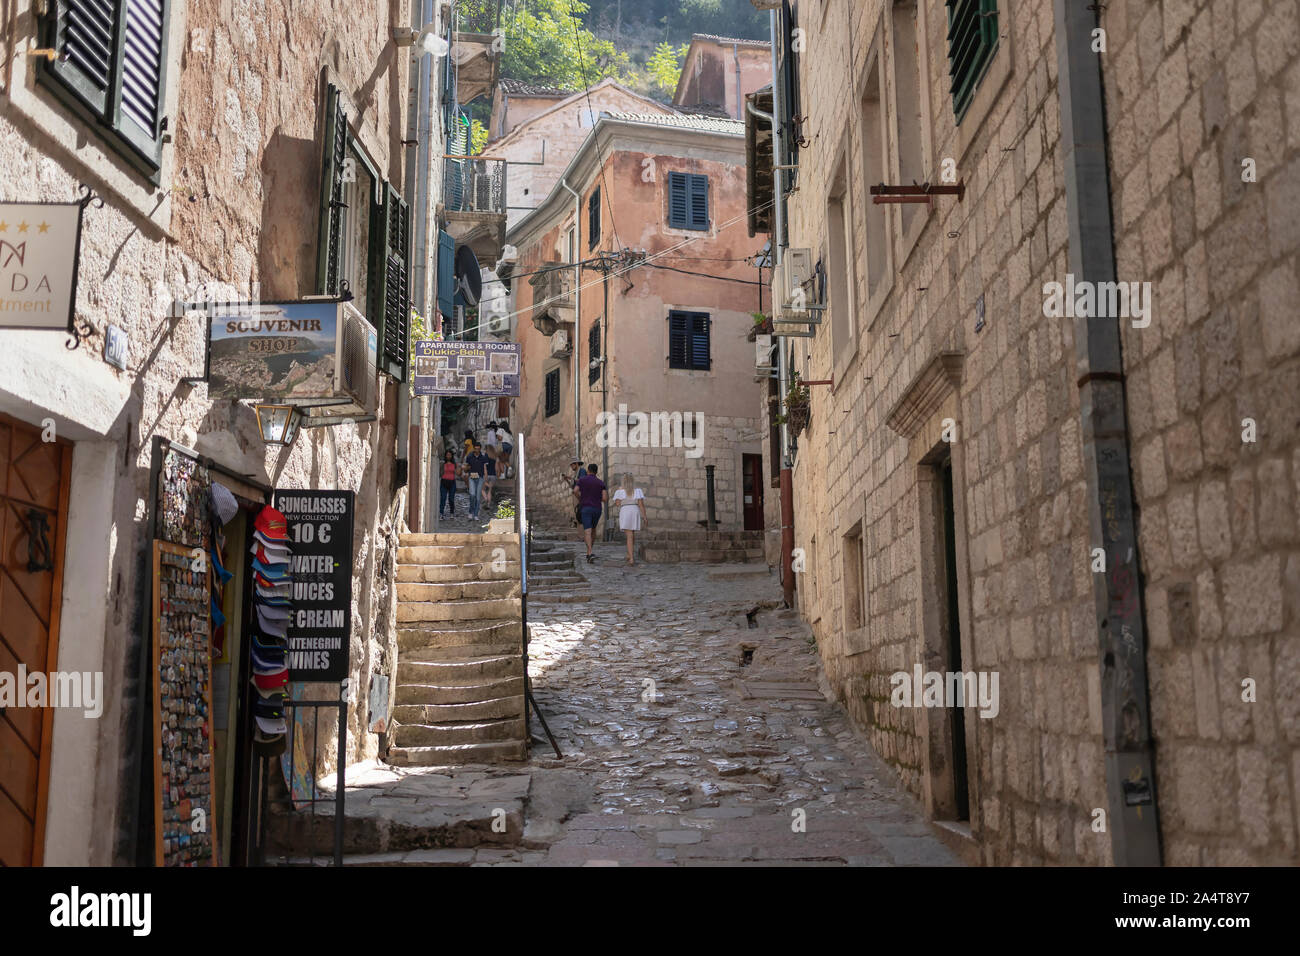 Monténégro - une vue d'une étroite rue pavée typique de la vieille ville de Kotor Banque D'Images